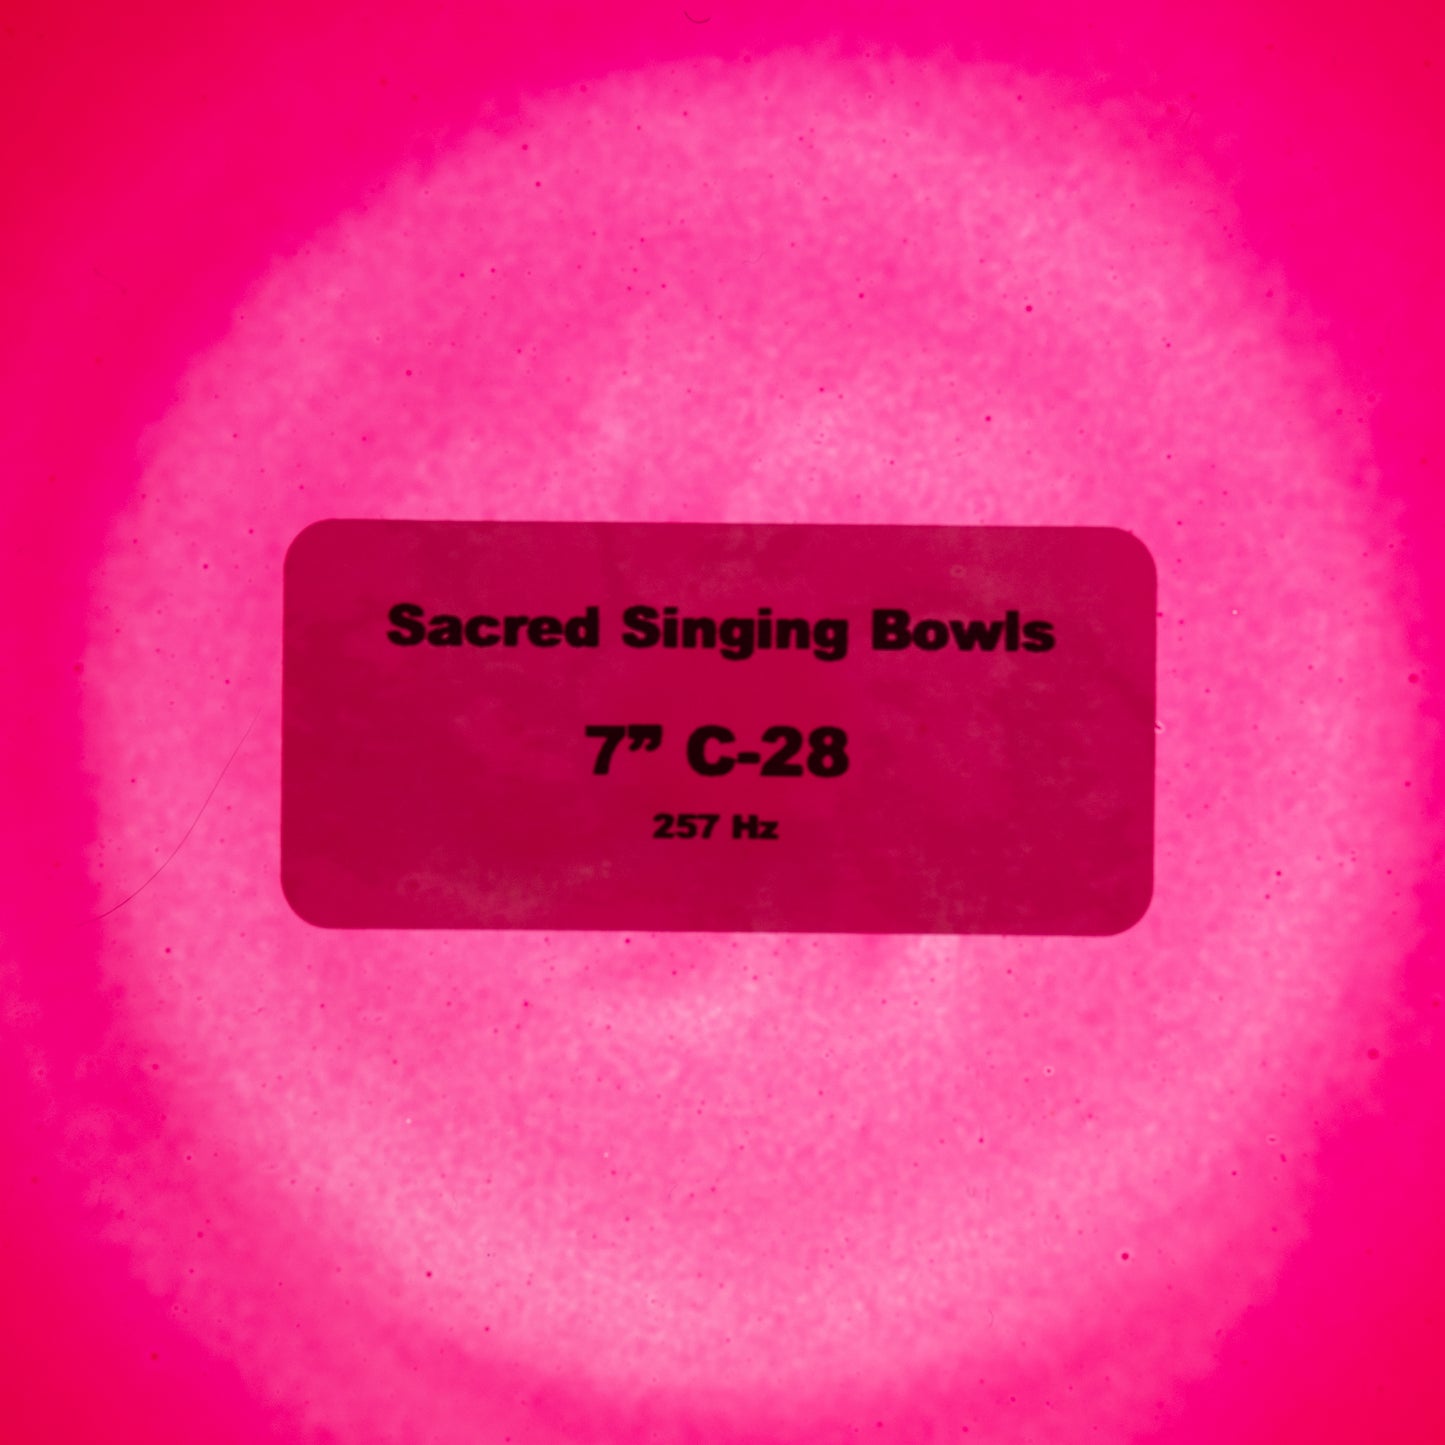 7" C-28 Ruby Color Crystal Singing Bowl, Sacred Singing Bowls